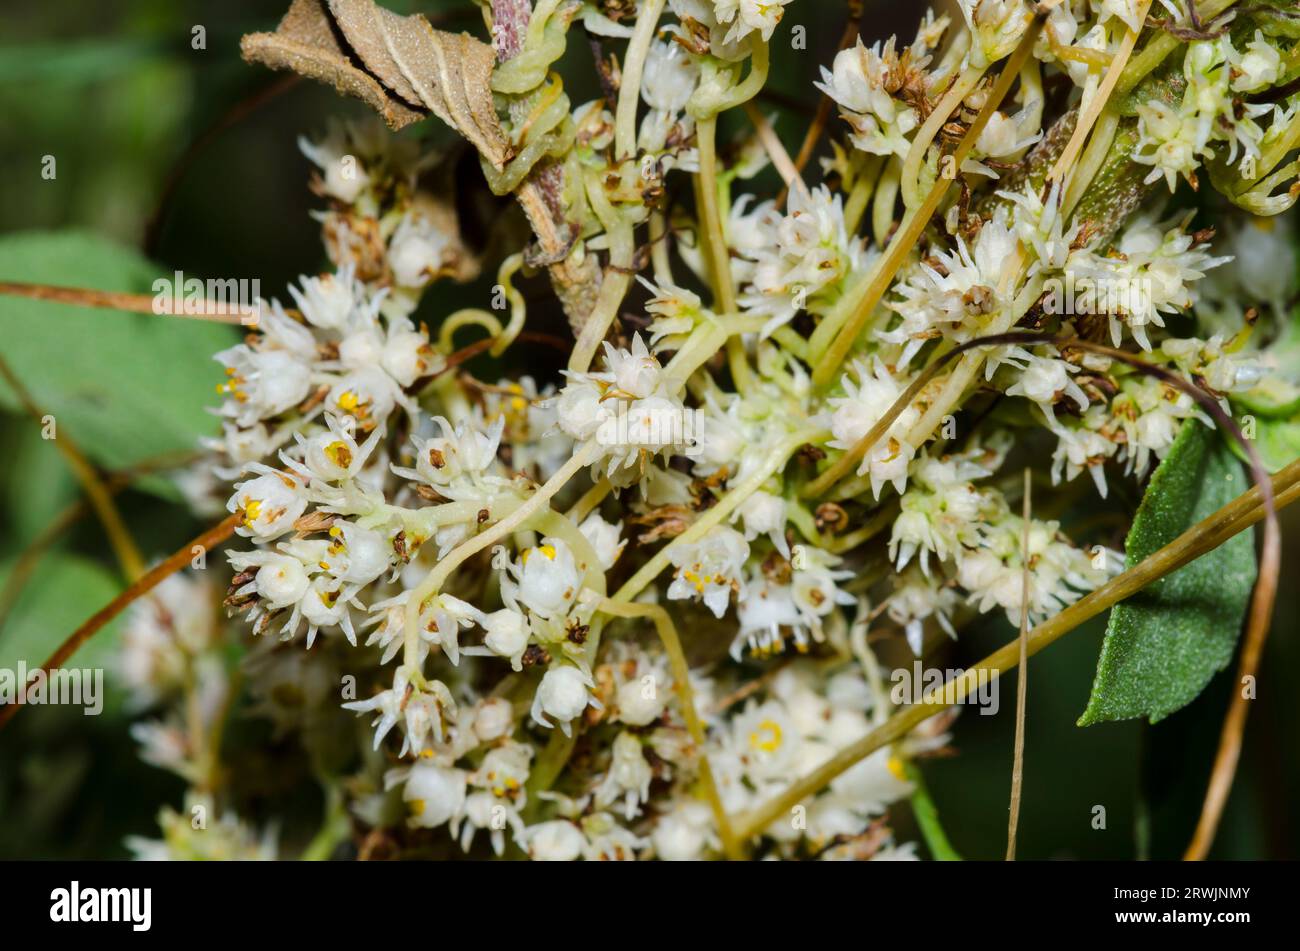 Taper-tip Dodder, Cuscuta attenuata, infesting Sumpweed, Iva annua Stock Photo